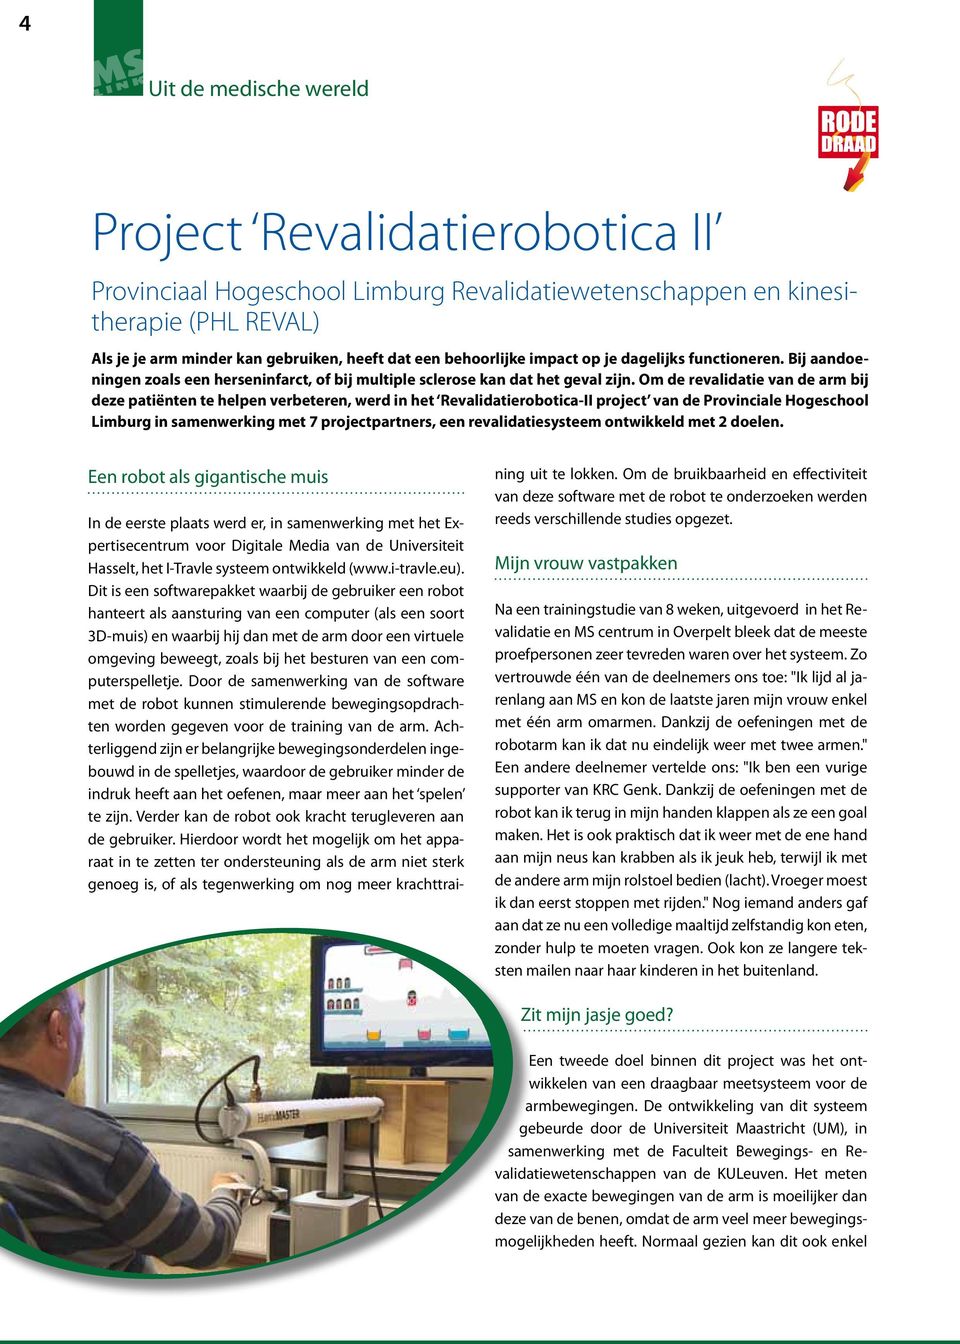 Om de revalidatie van de arm bij deze patiënten te helpen verbeteren, werd in het Revalidatierobotica-II project van de Provinciale Hogeschool Limburg in samenwerking met 7 projectpartners, een